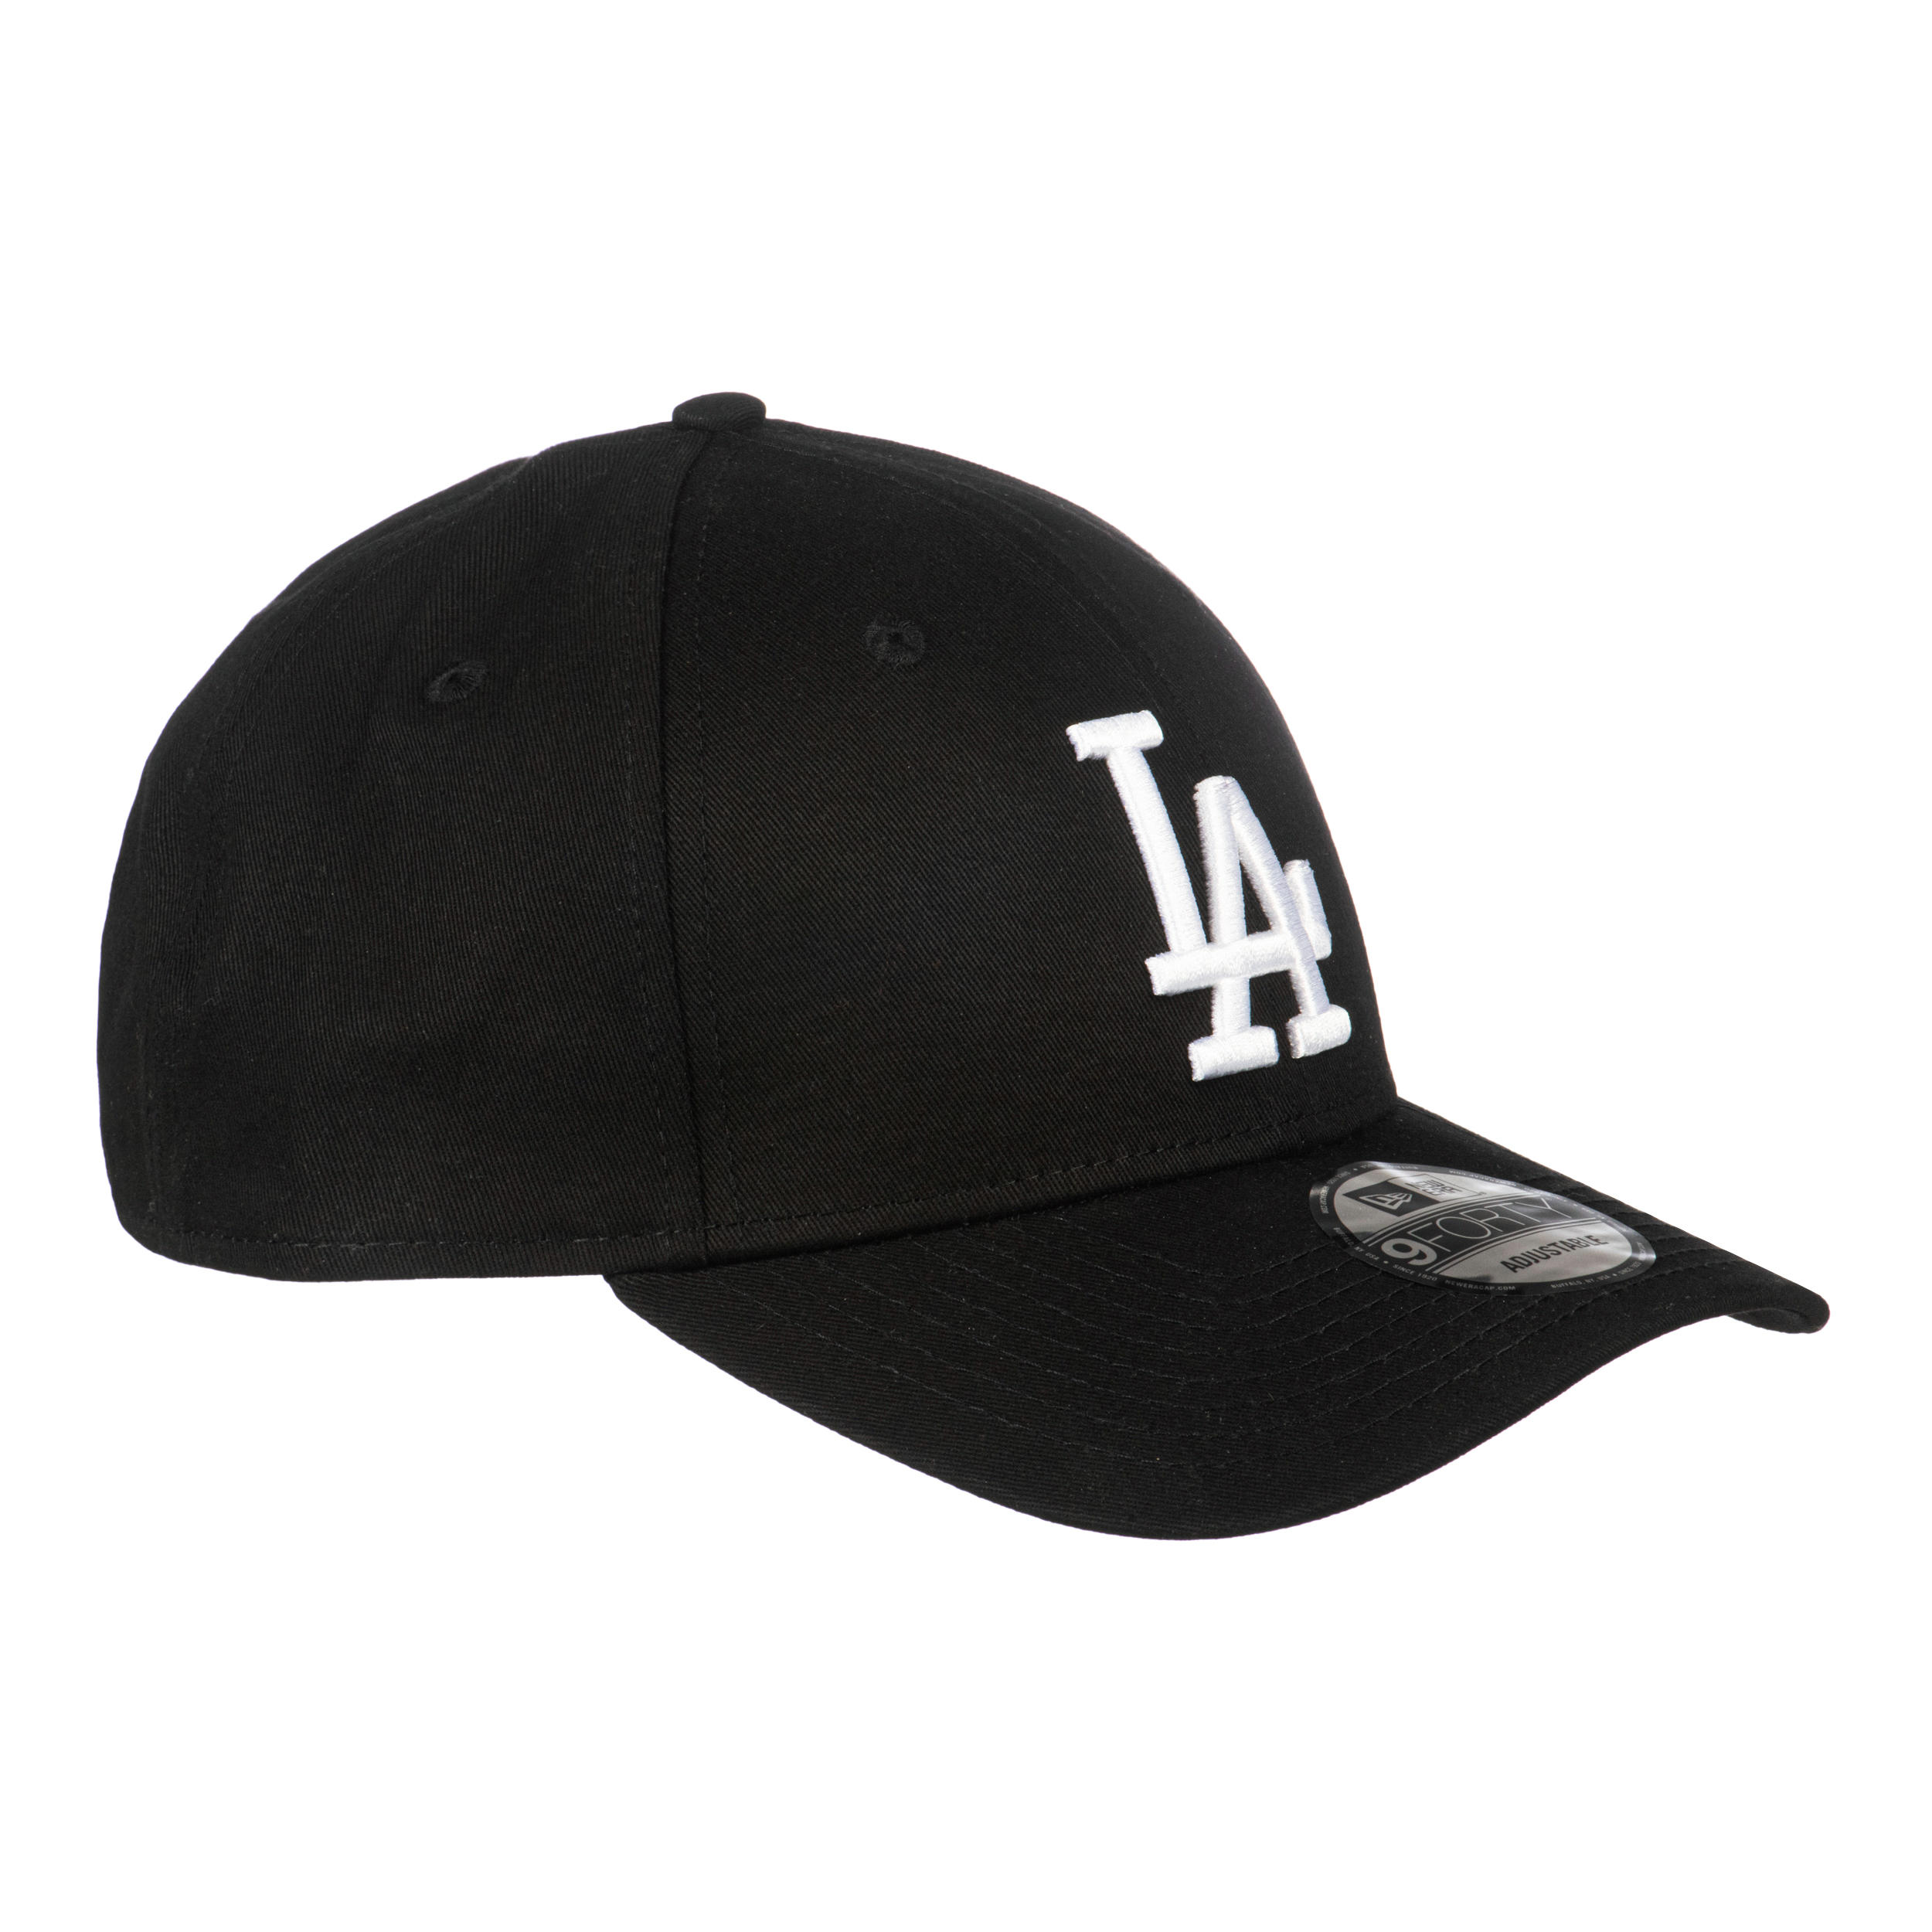 Adult Baseball Cap Los Angeles Dodgers 